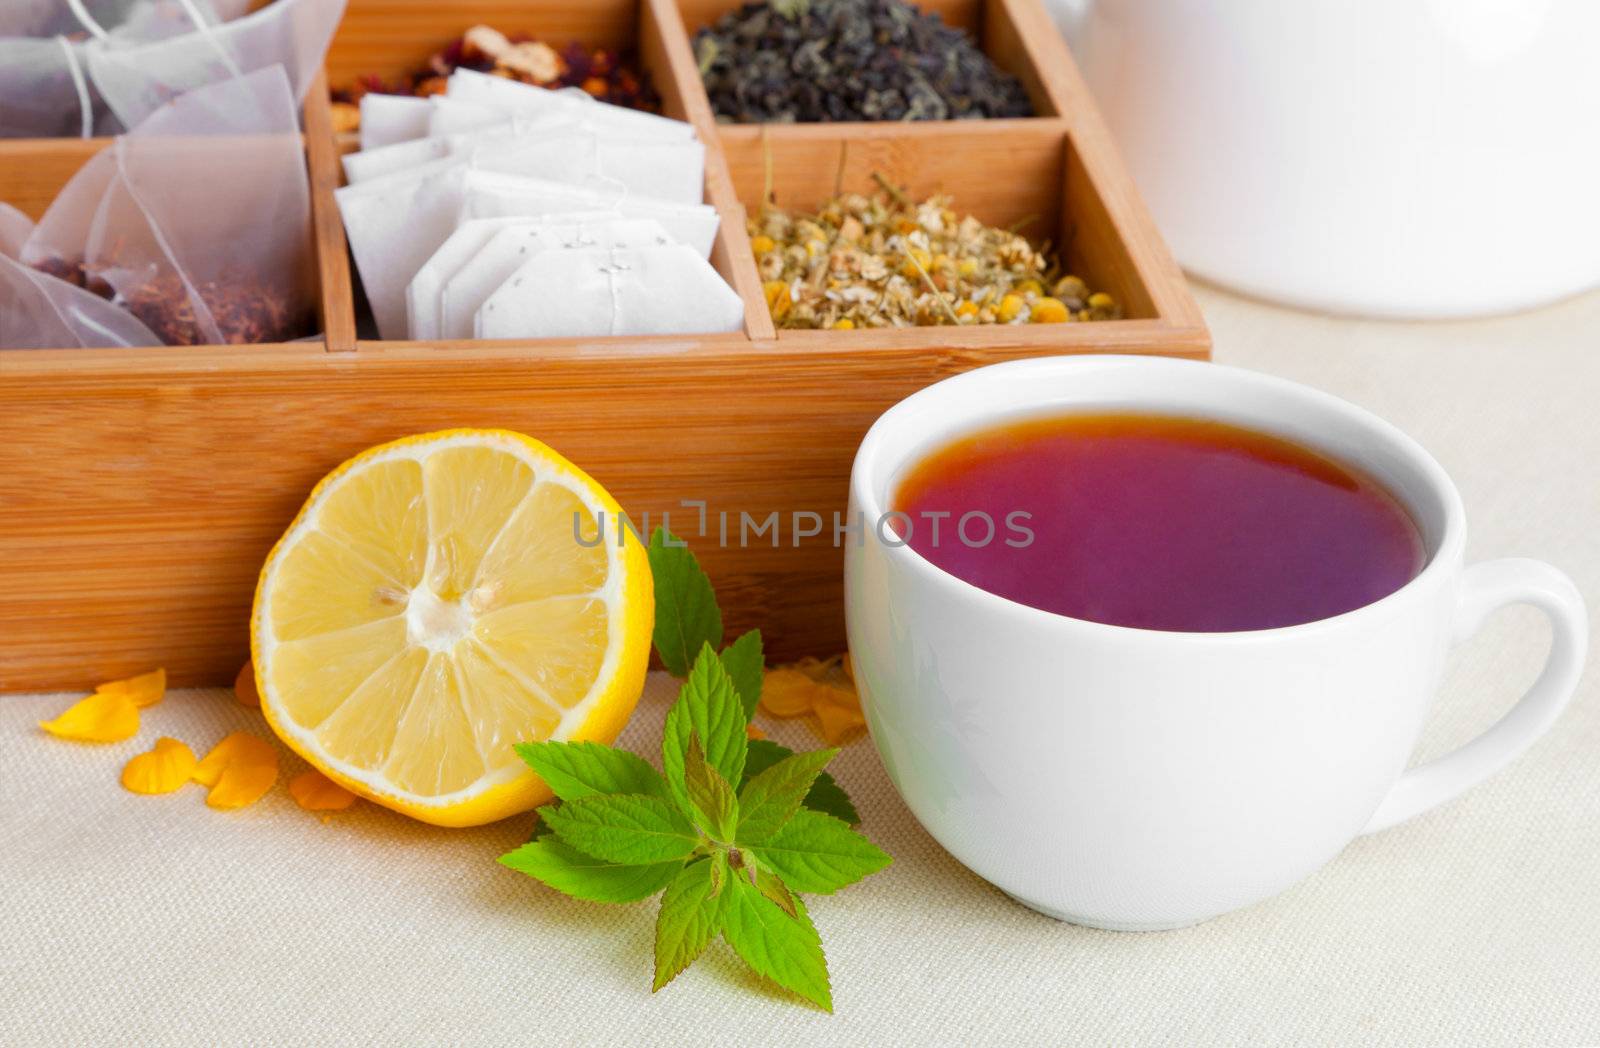 a cup of tea by motorolka